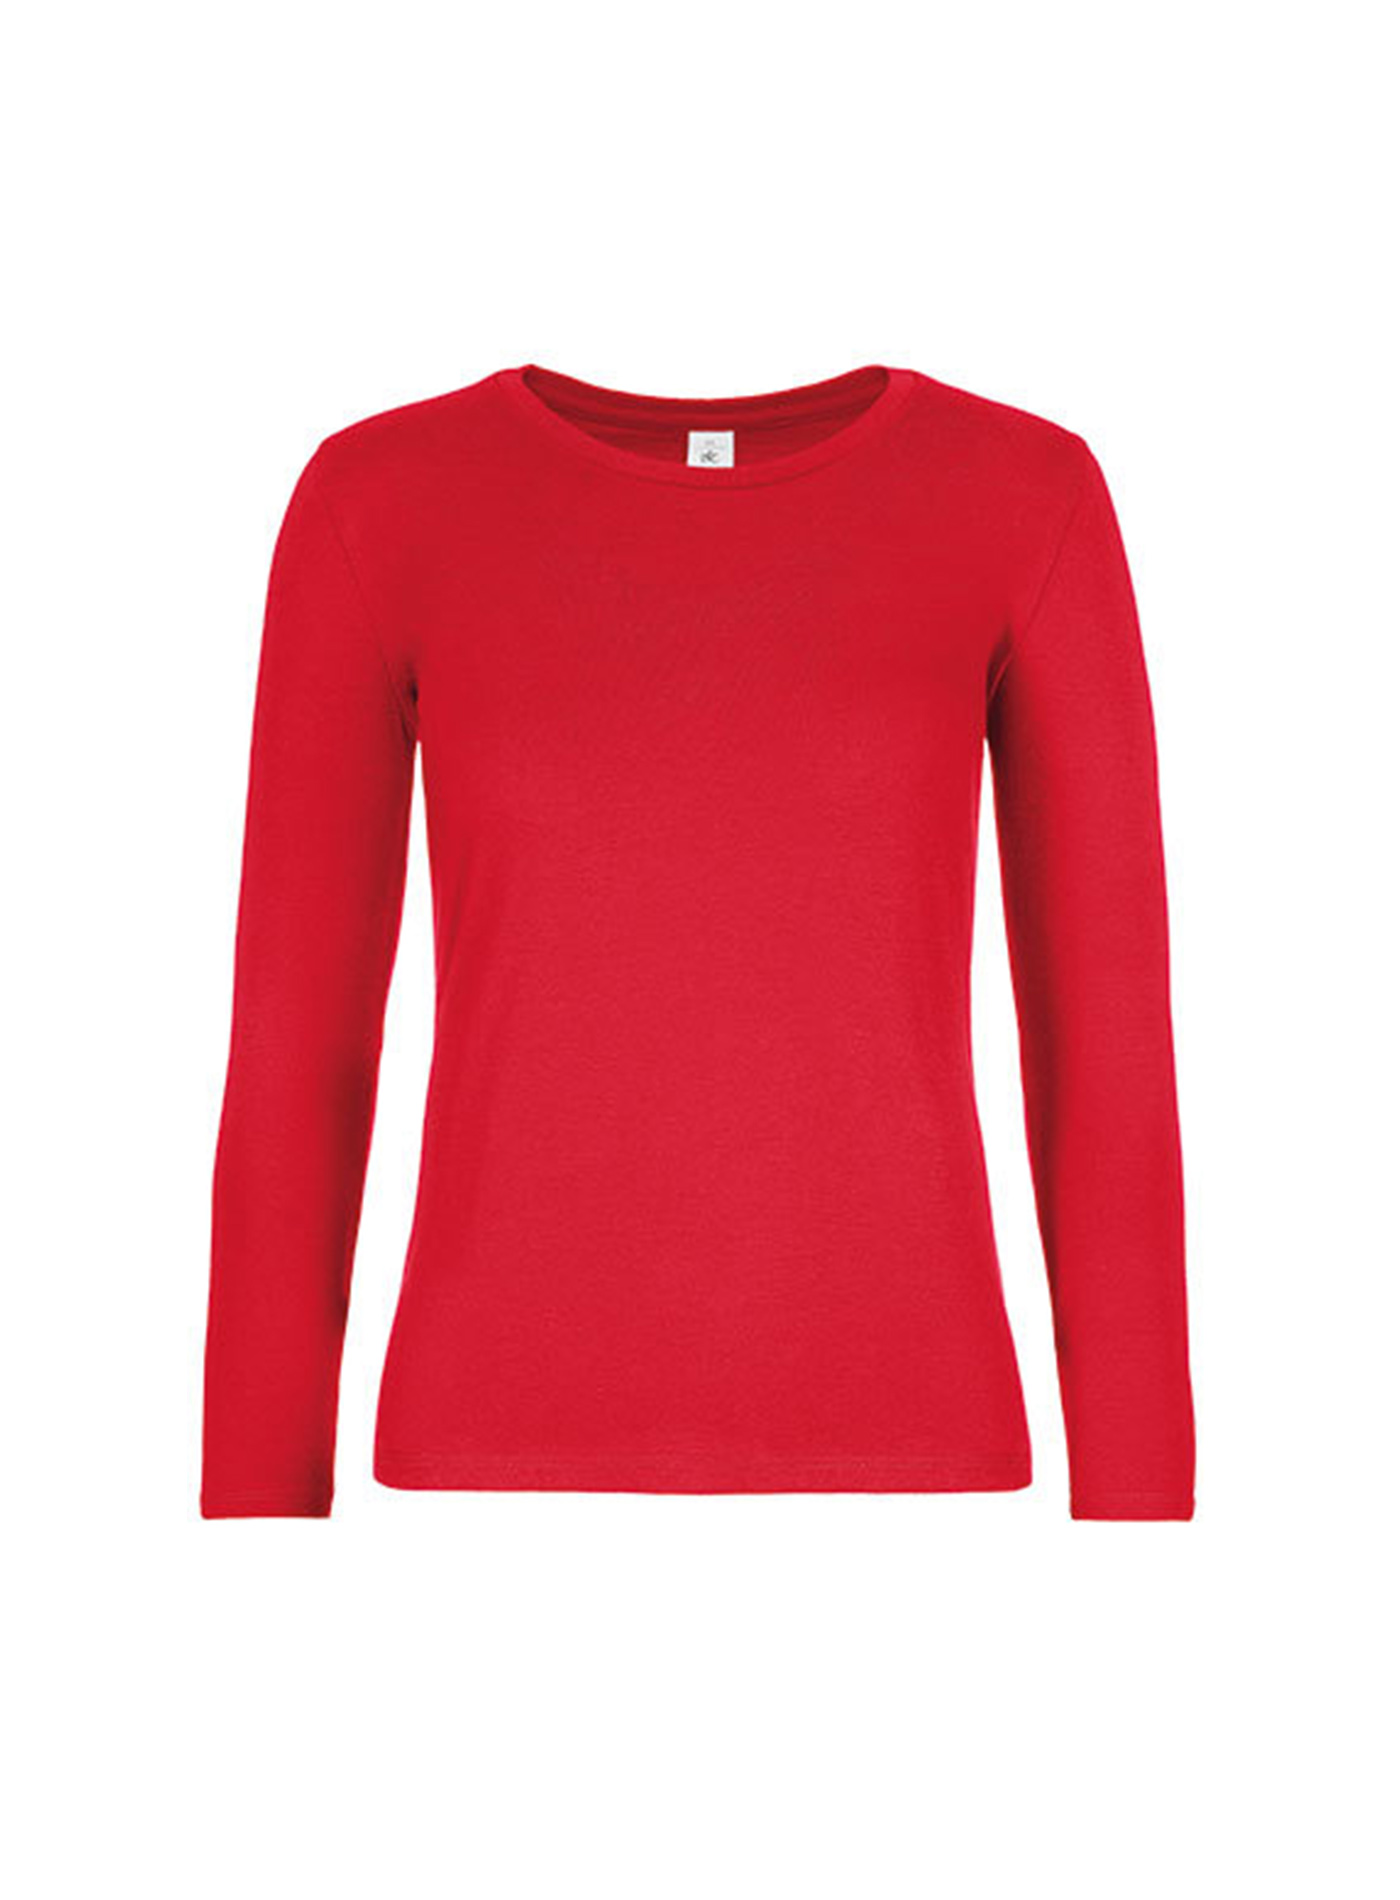 Dámské tričko s dlouhým rukávem B&C Collection - Červená L